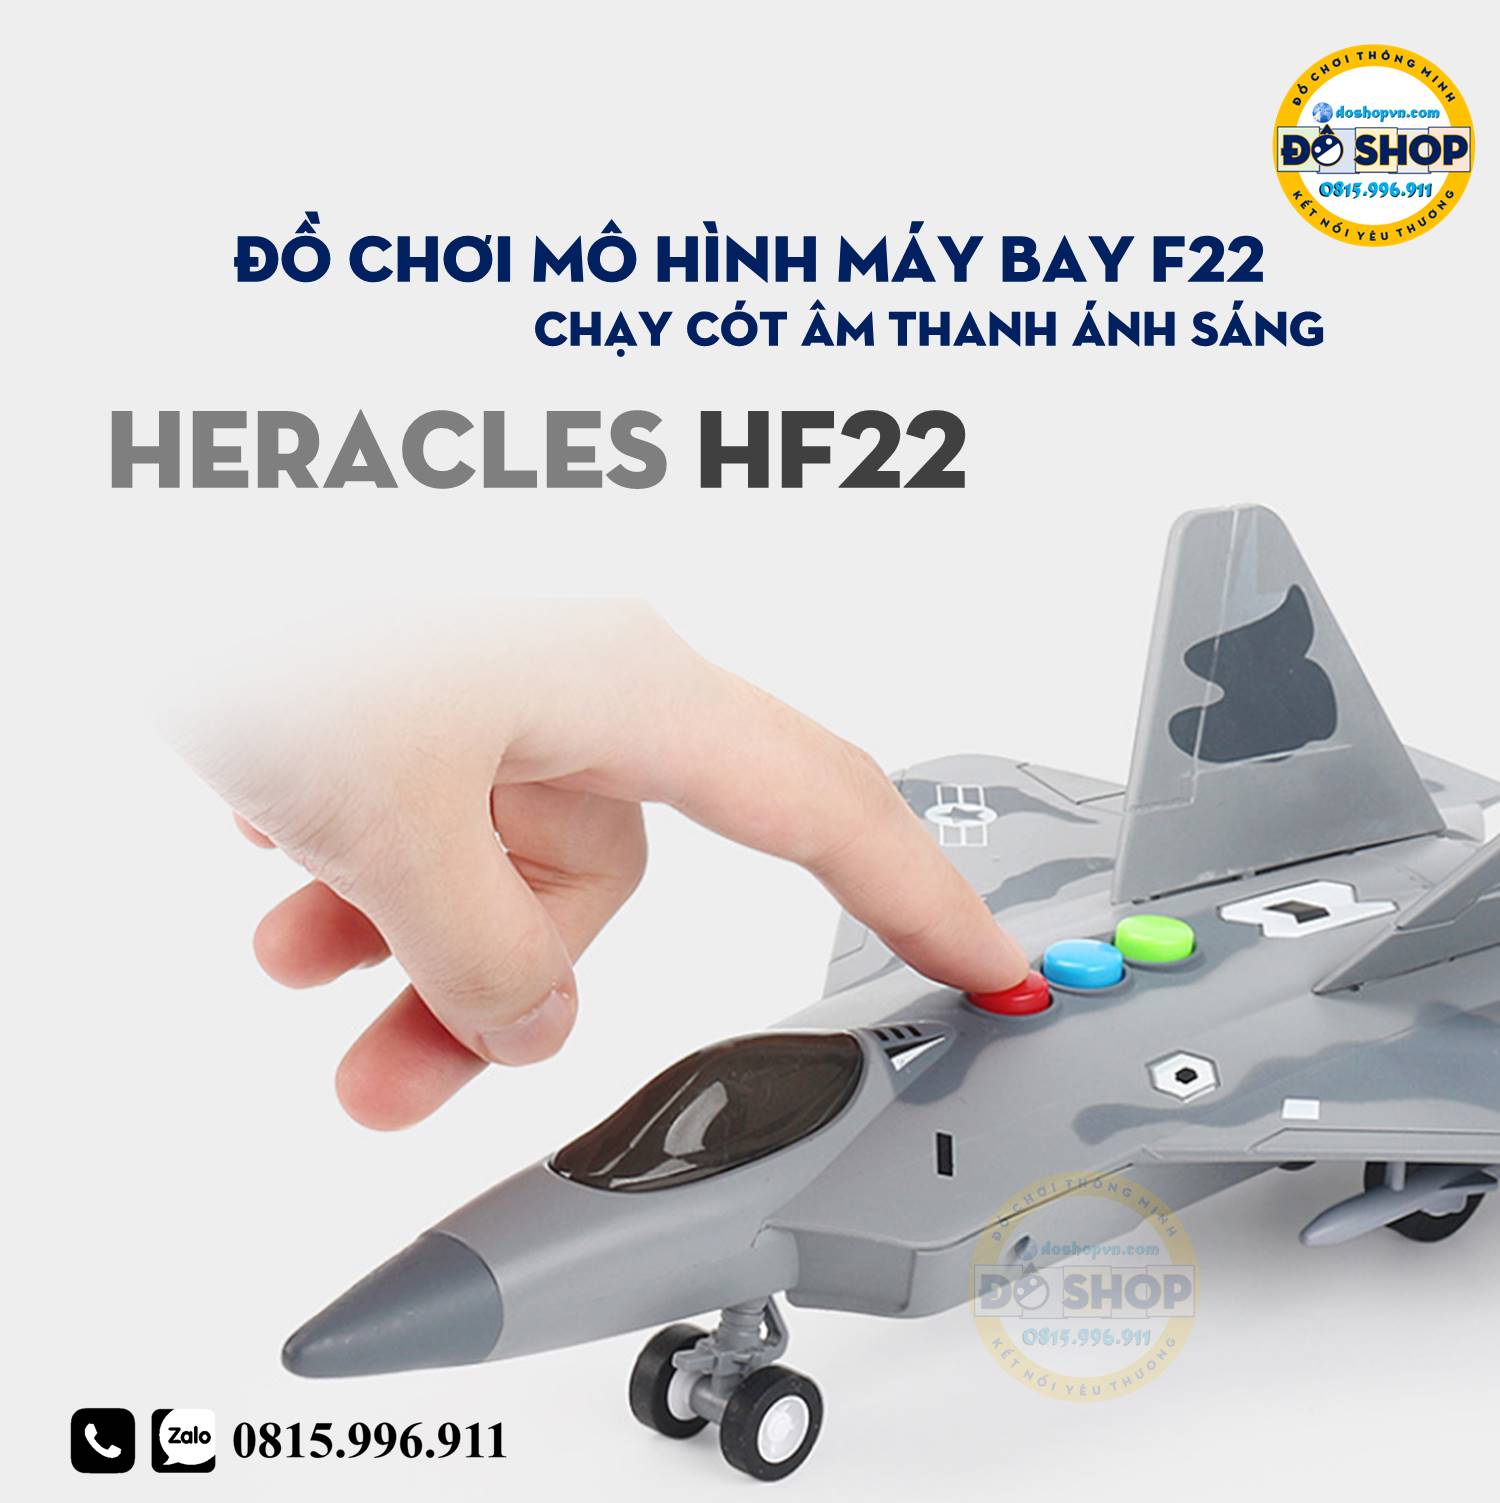 Đồ Chơi Mô Hình Máy Bay F22 Chạy Cót Heracles HF22